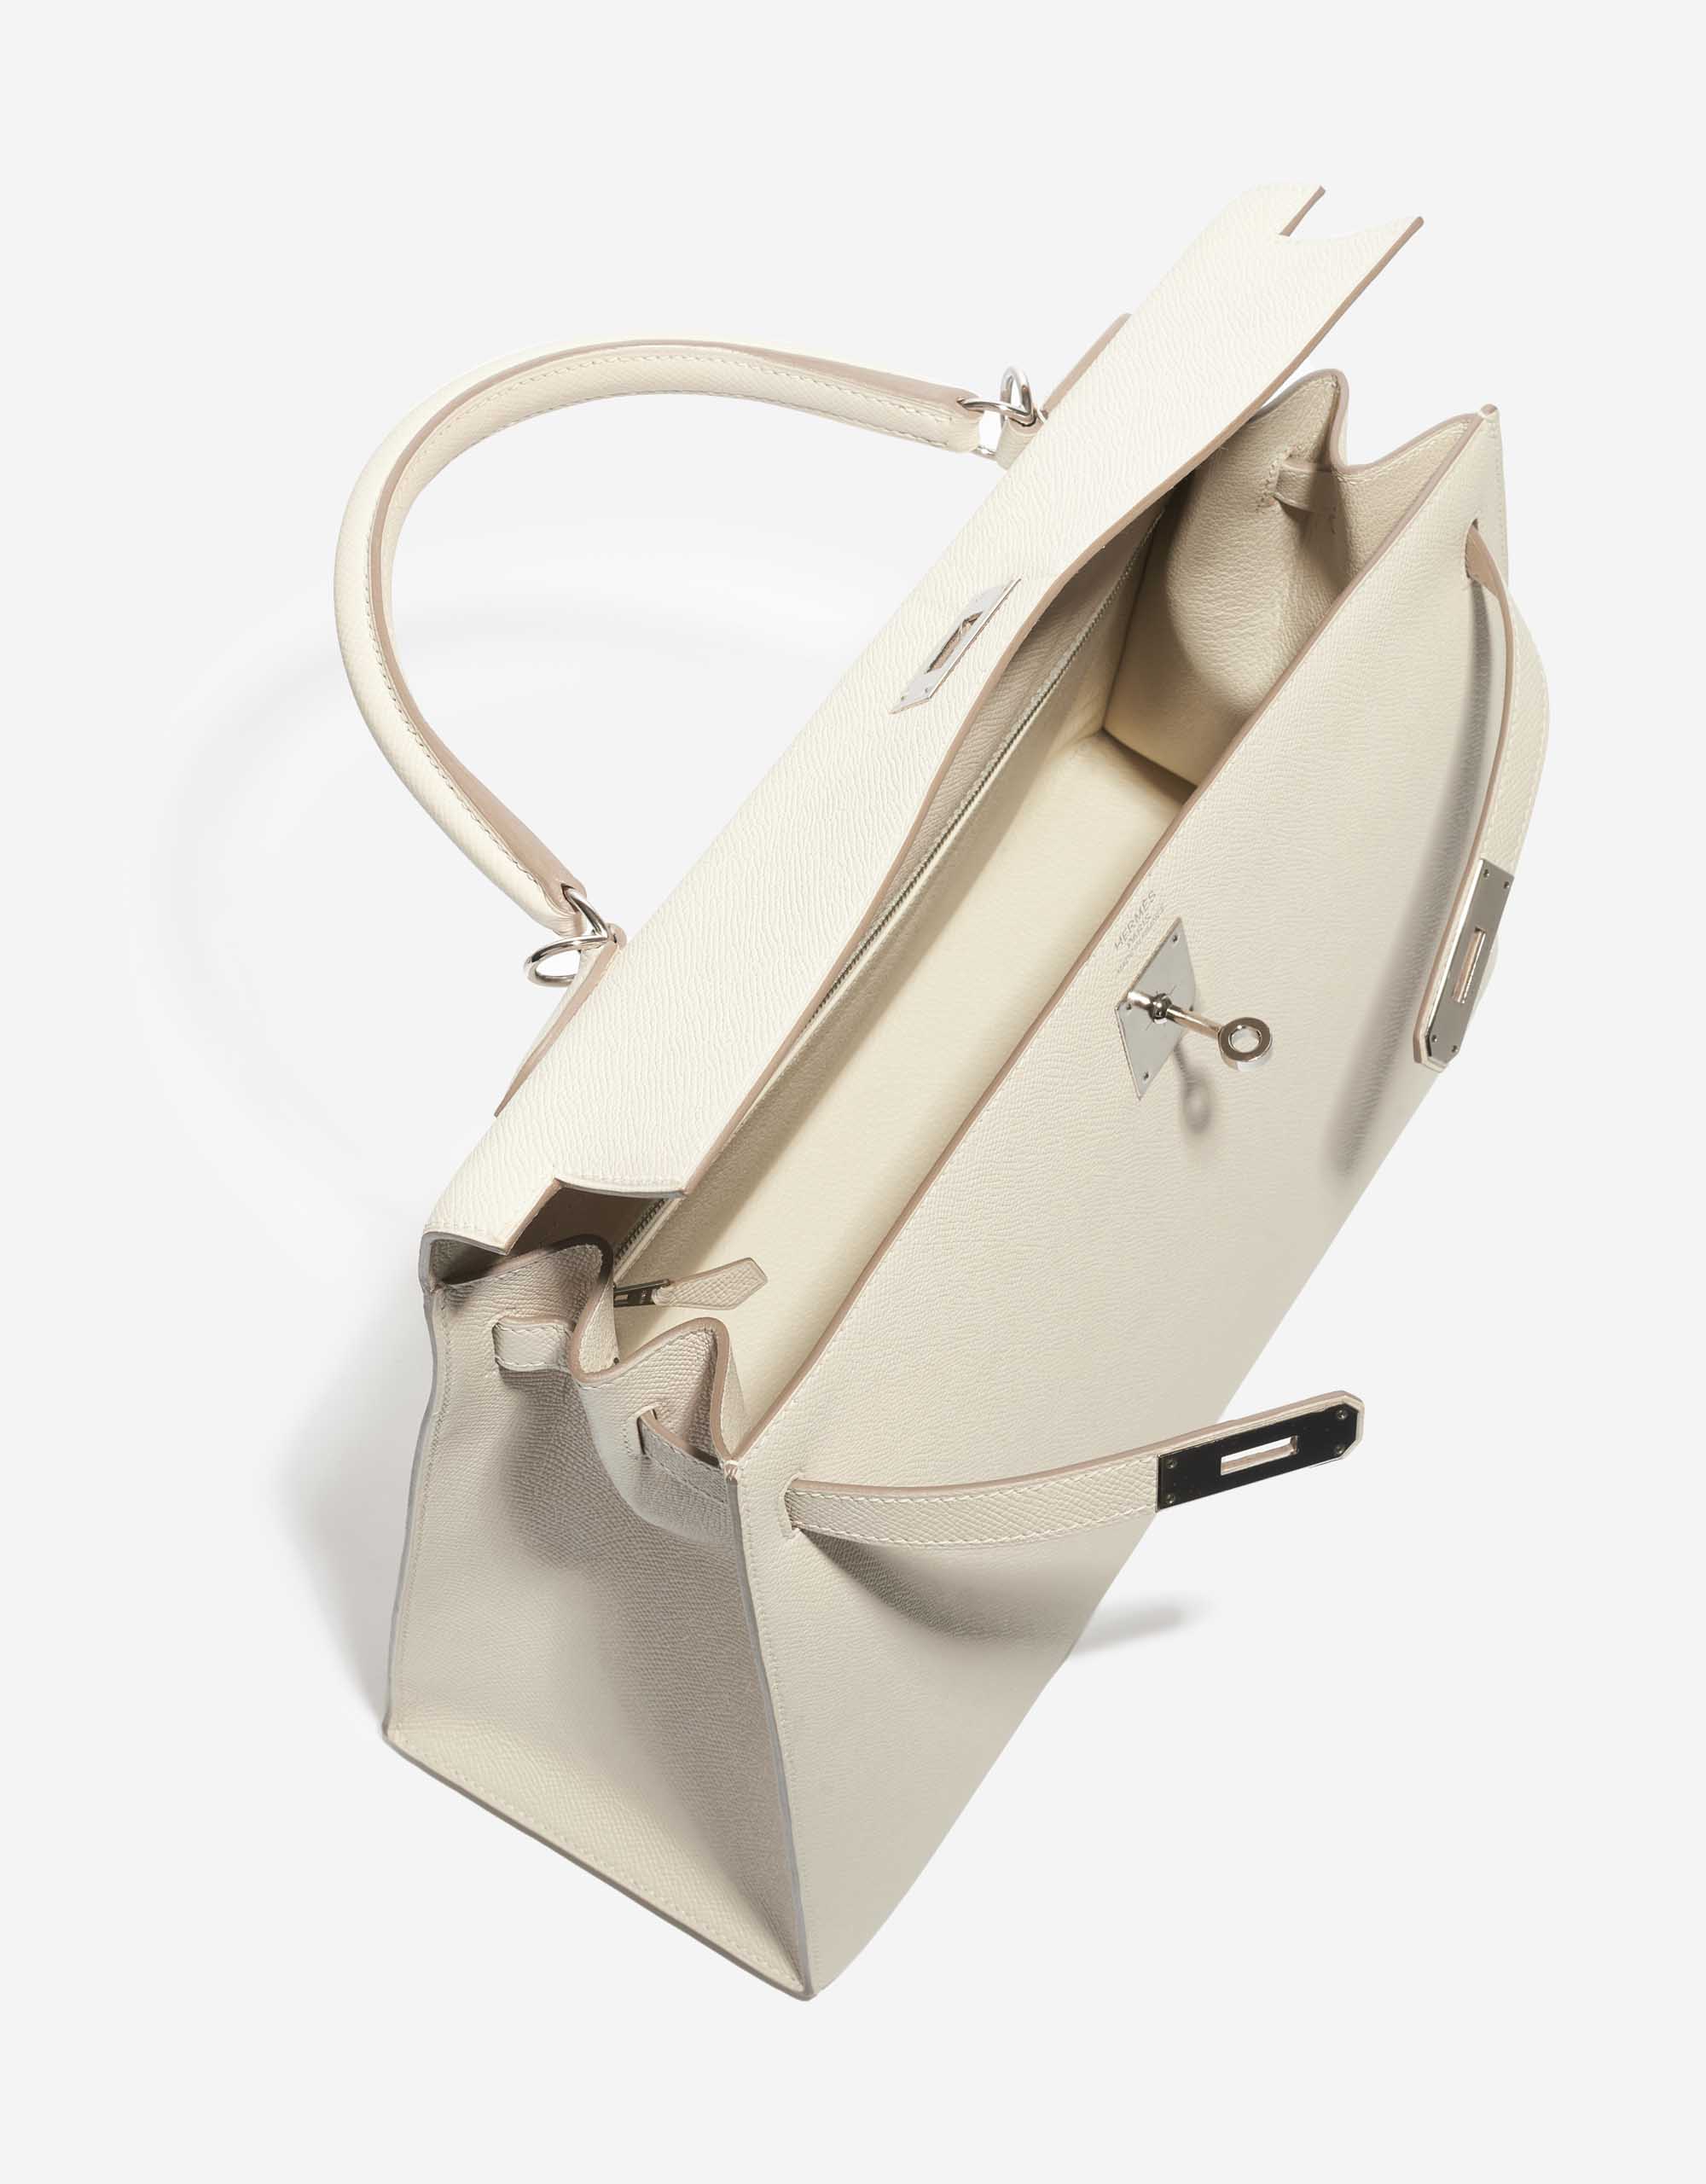 Pre-owned Hermès Tasche Kelly 35 Epsom Craie White Inside | Verkaufen Sie Ihre Designer-Tasche auf Saclab.com